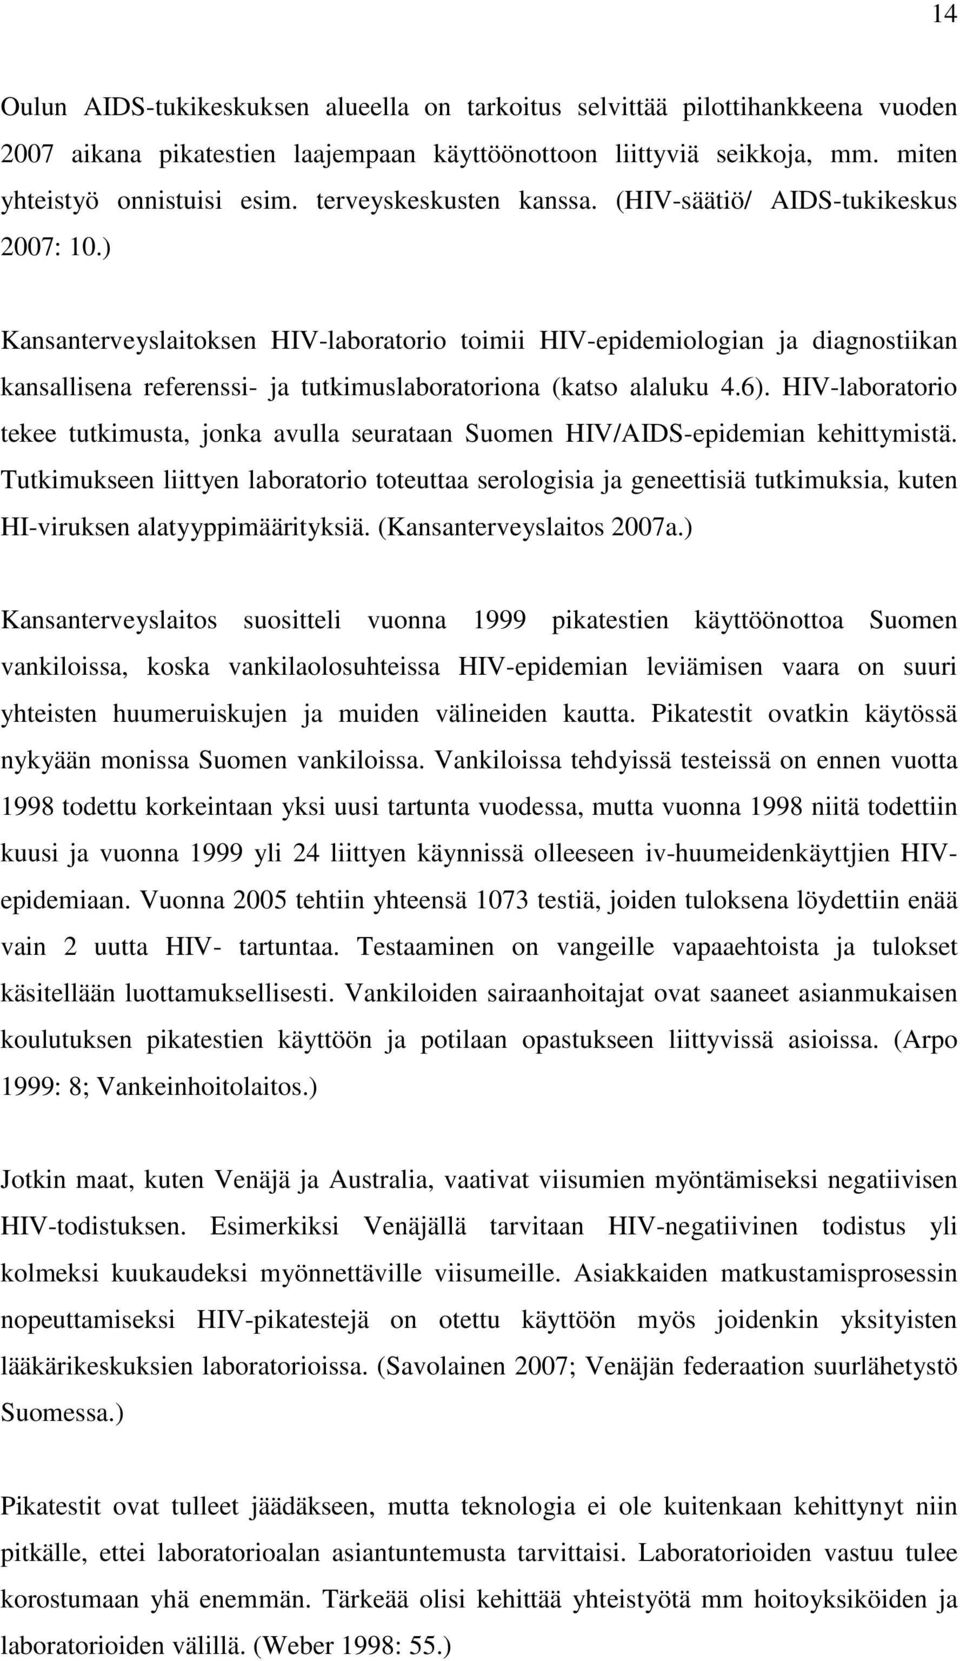 ) Kansanterveyslaitoksen HIV-laboratorio toimii HIV-epidemiologian ja diagnostiikan kansallisena referenssi- ja tutkimuslaboratoriona (katso alaluku 4.6).